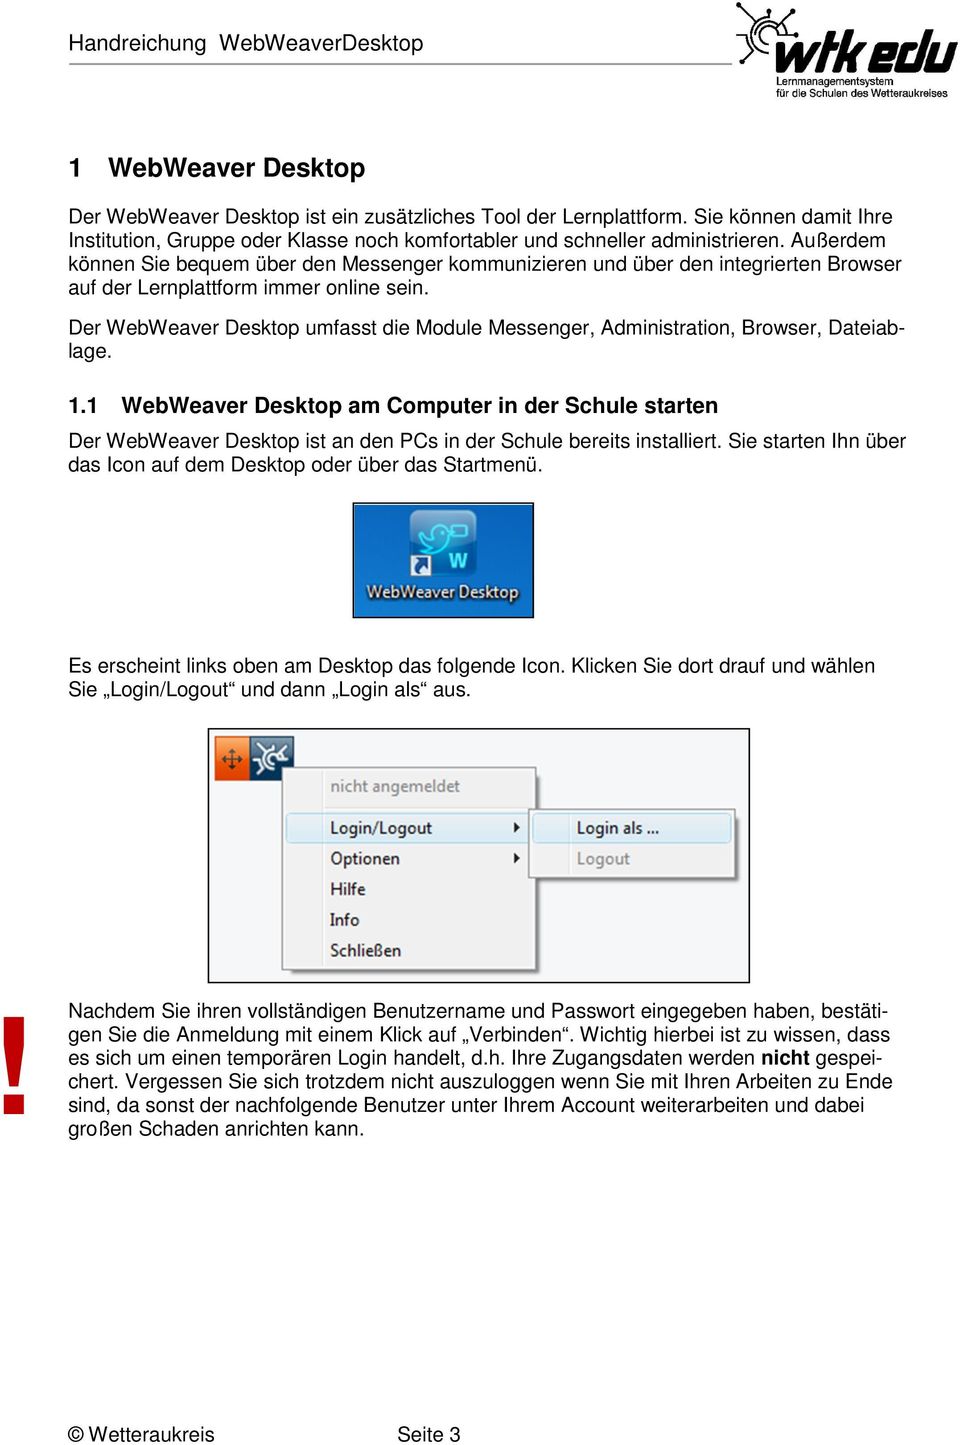 Der WebWeaver Desktop umfasst die Module Messenger, Administration, Browser, Dateiablage. 1.